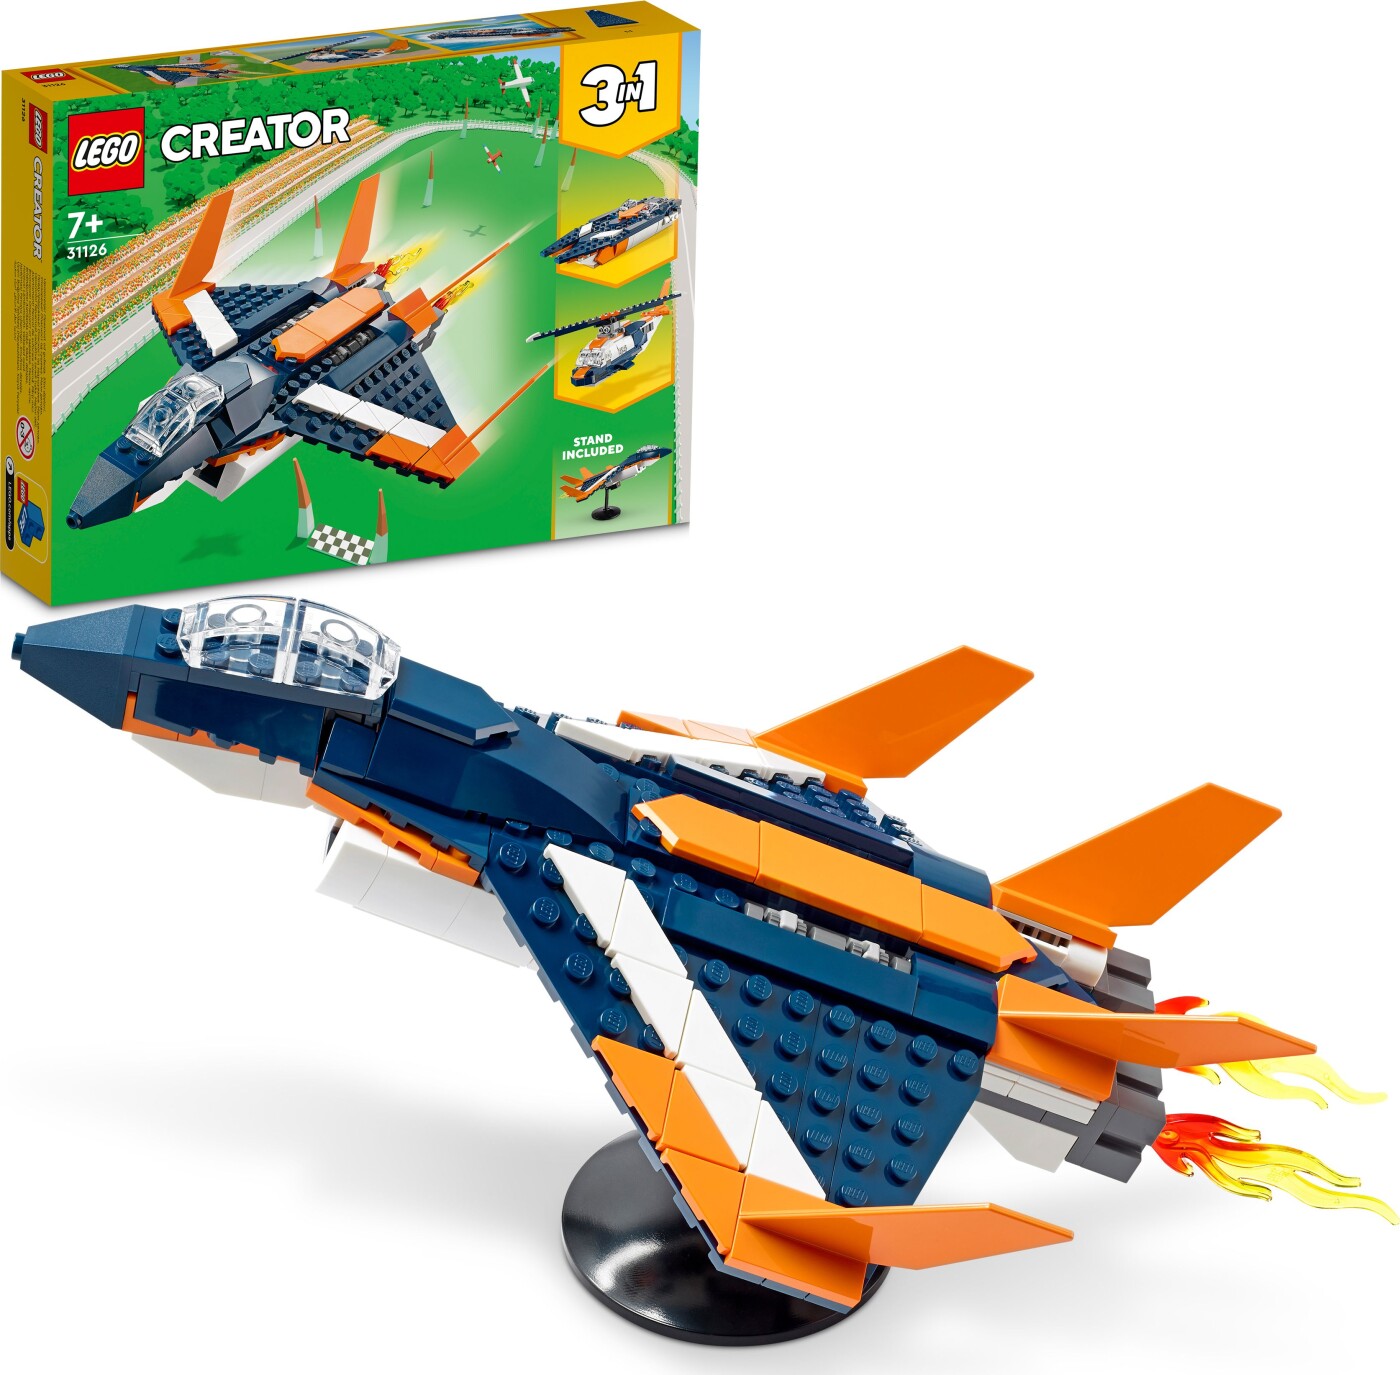 Billede af Lego Creator 3-in-1 - Supersonisk Jet - 31126 hos Gucca.dk